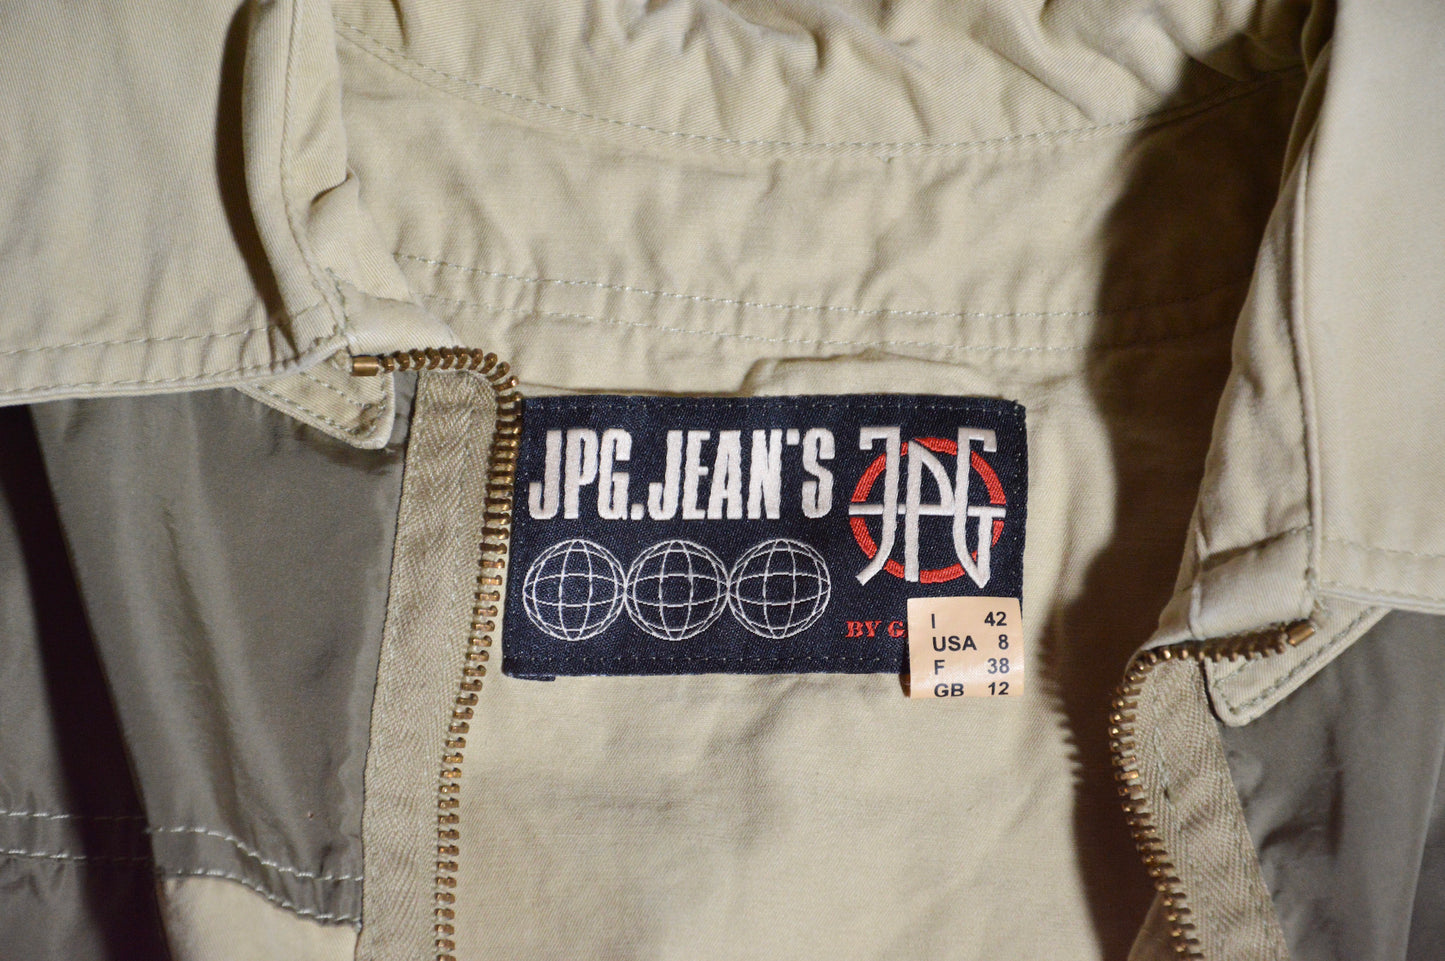 JPG Jean's - 2003 Bondage Shirt